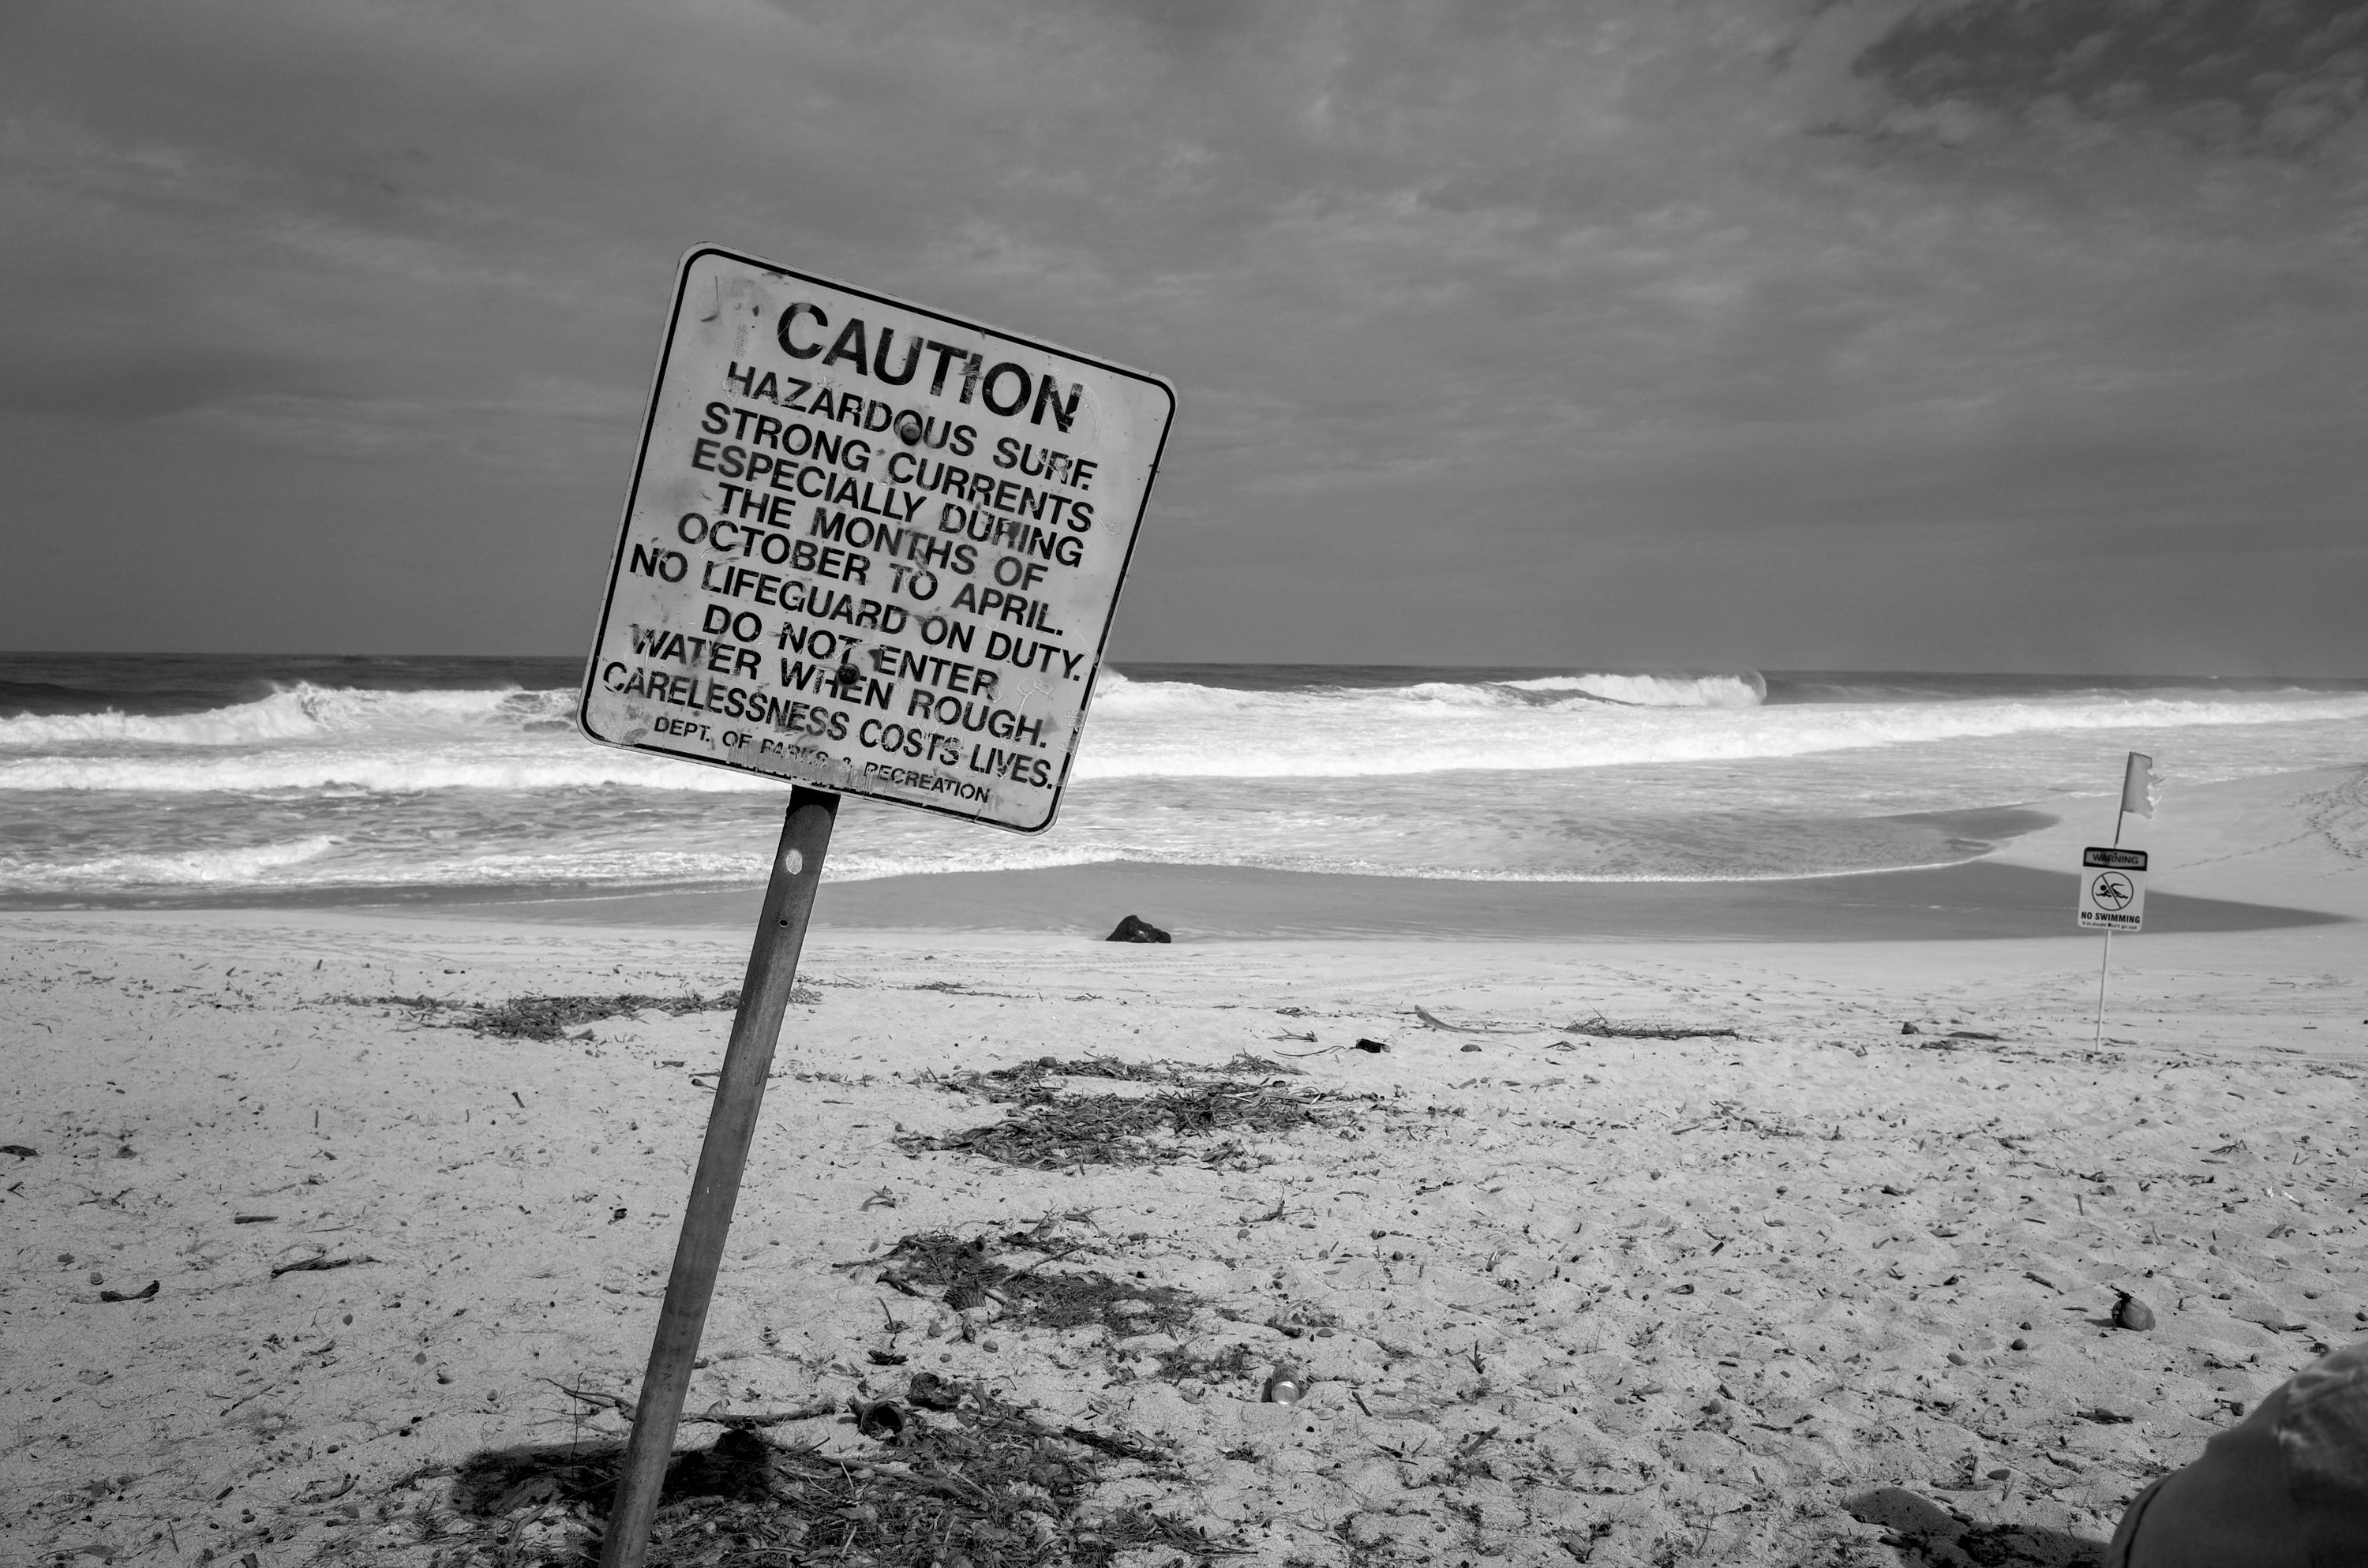 Caution Hazardous Surf. North Shore Oahu